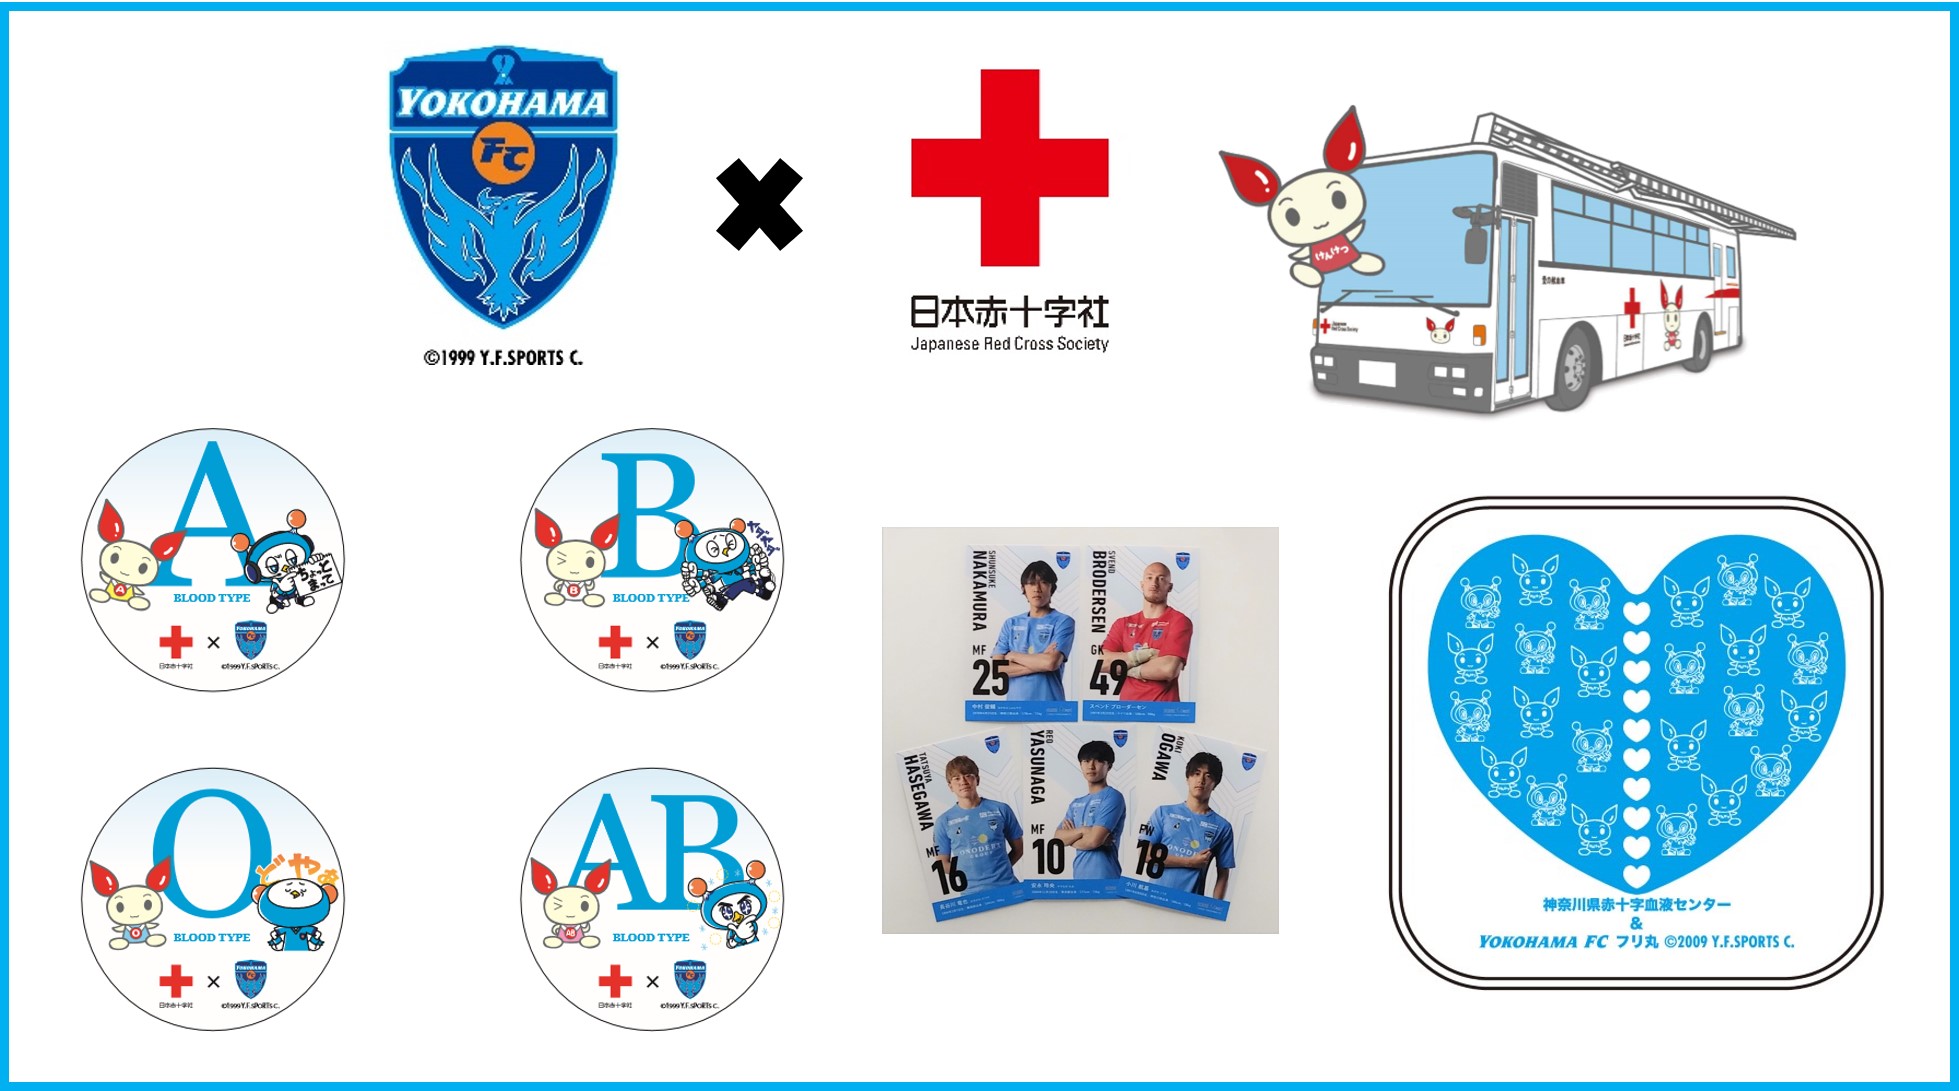 3 13 日 水戸戦 献血応援プロジェクト 実施のお知らせ 横浜fcオフィシャルウェブサイト